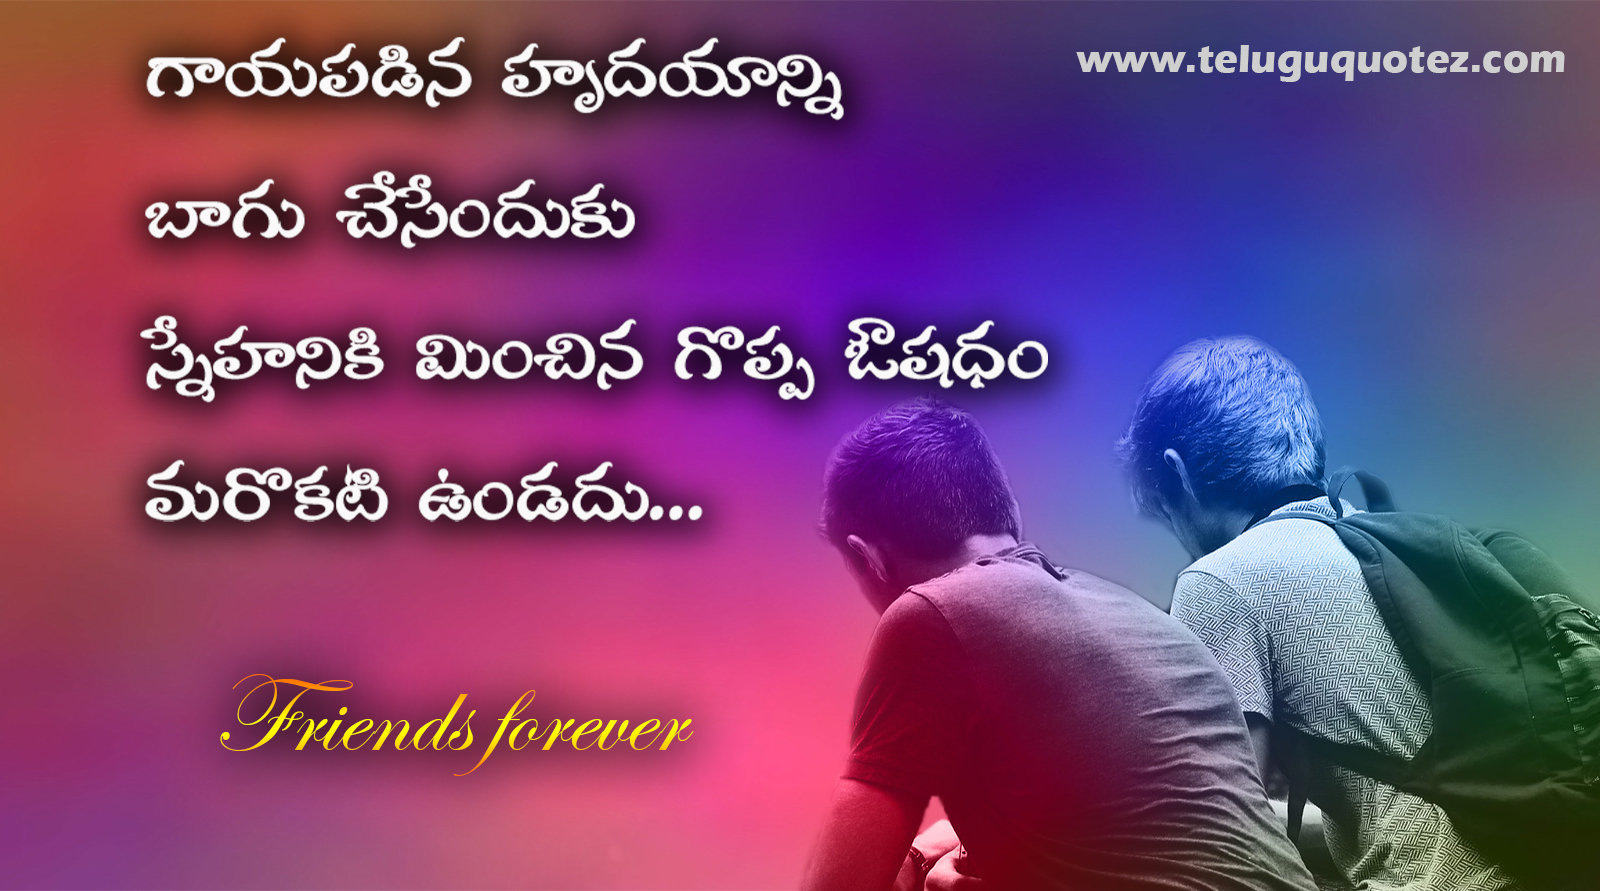 Telugu Friendship Quotes - Telugu Quotes